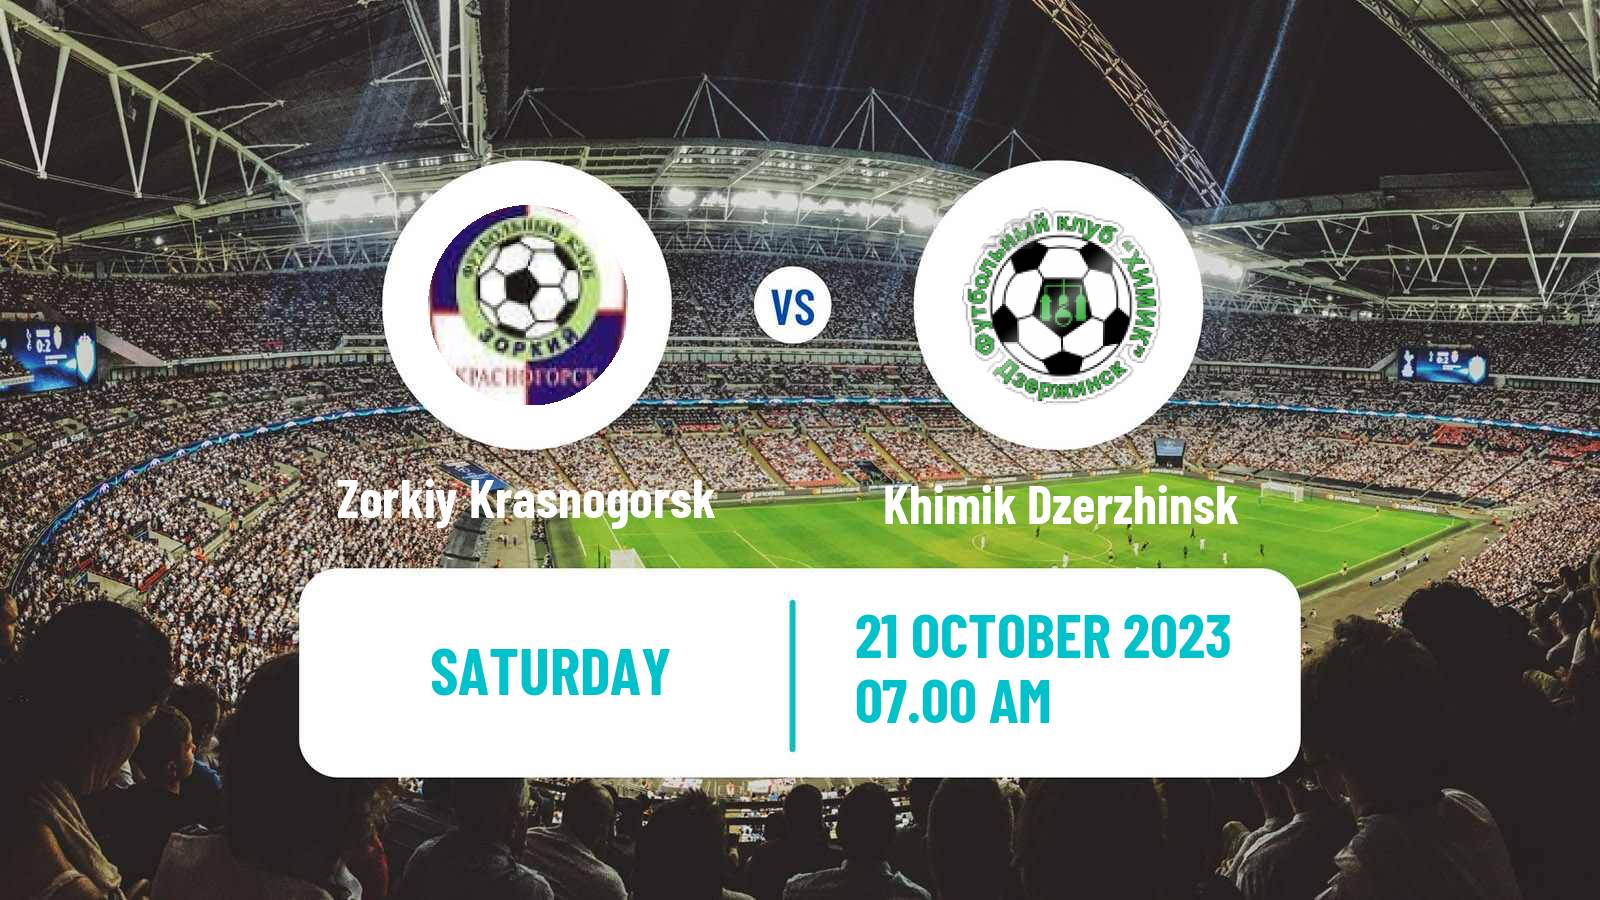 Soccer FNL 2 Division B Group 2 Zorkiy Krasnogorsk - Khimik Dzerzhinsk